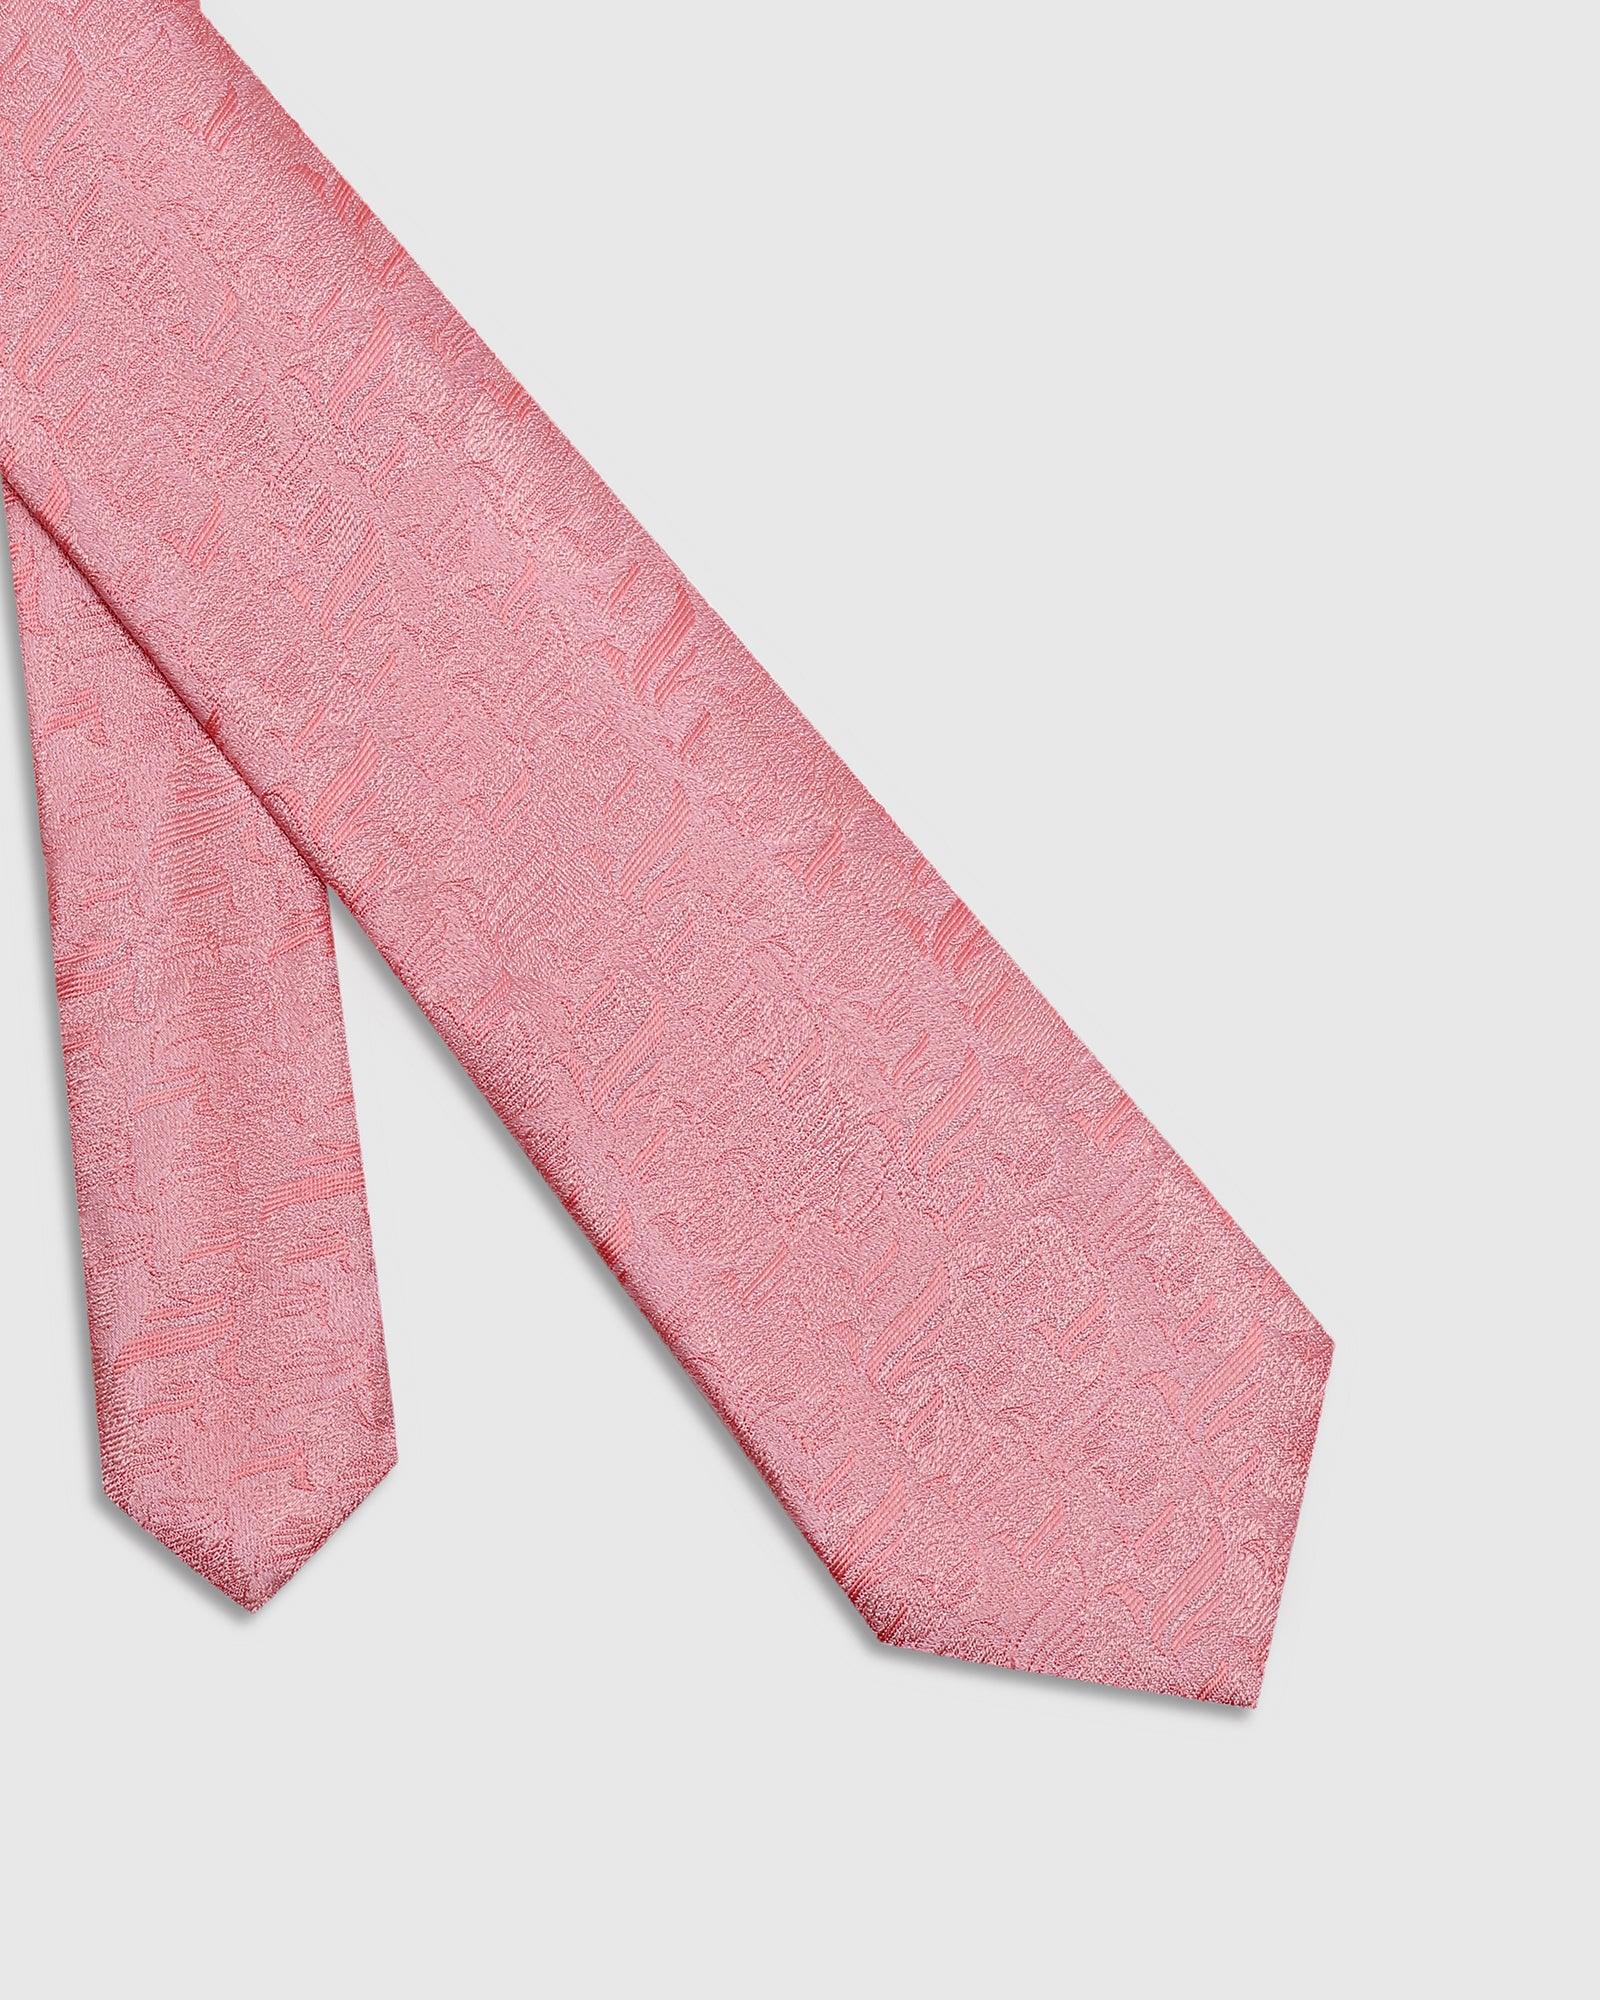 Printed Tie In Pink (Talisca) - Blackberrys